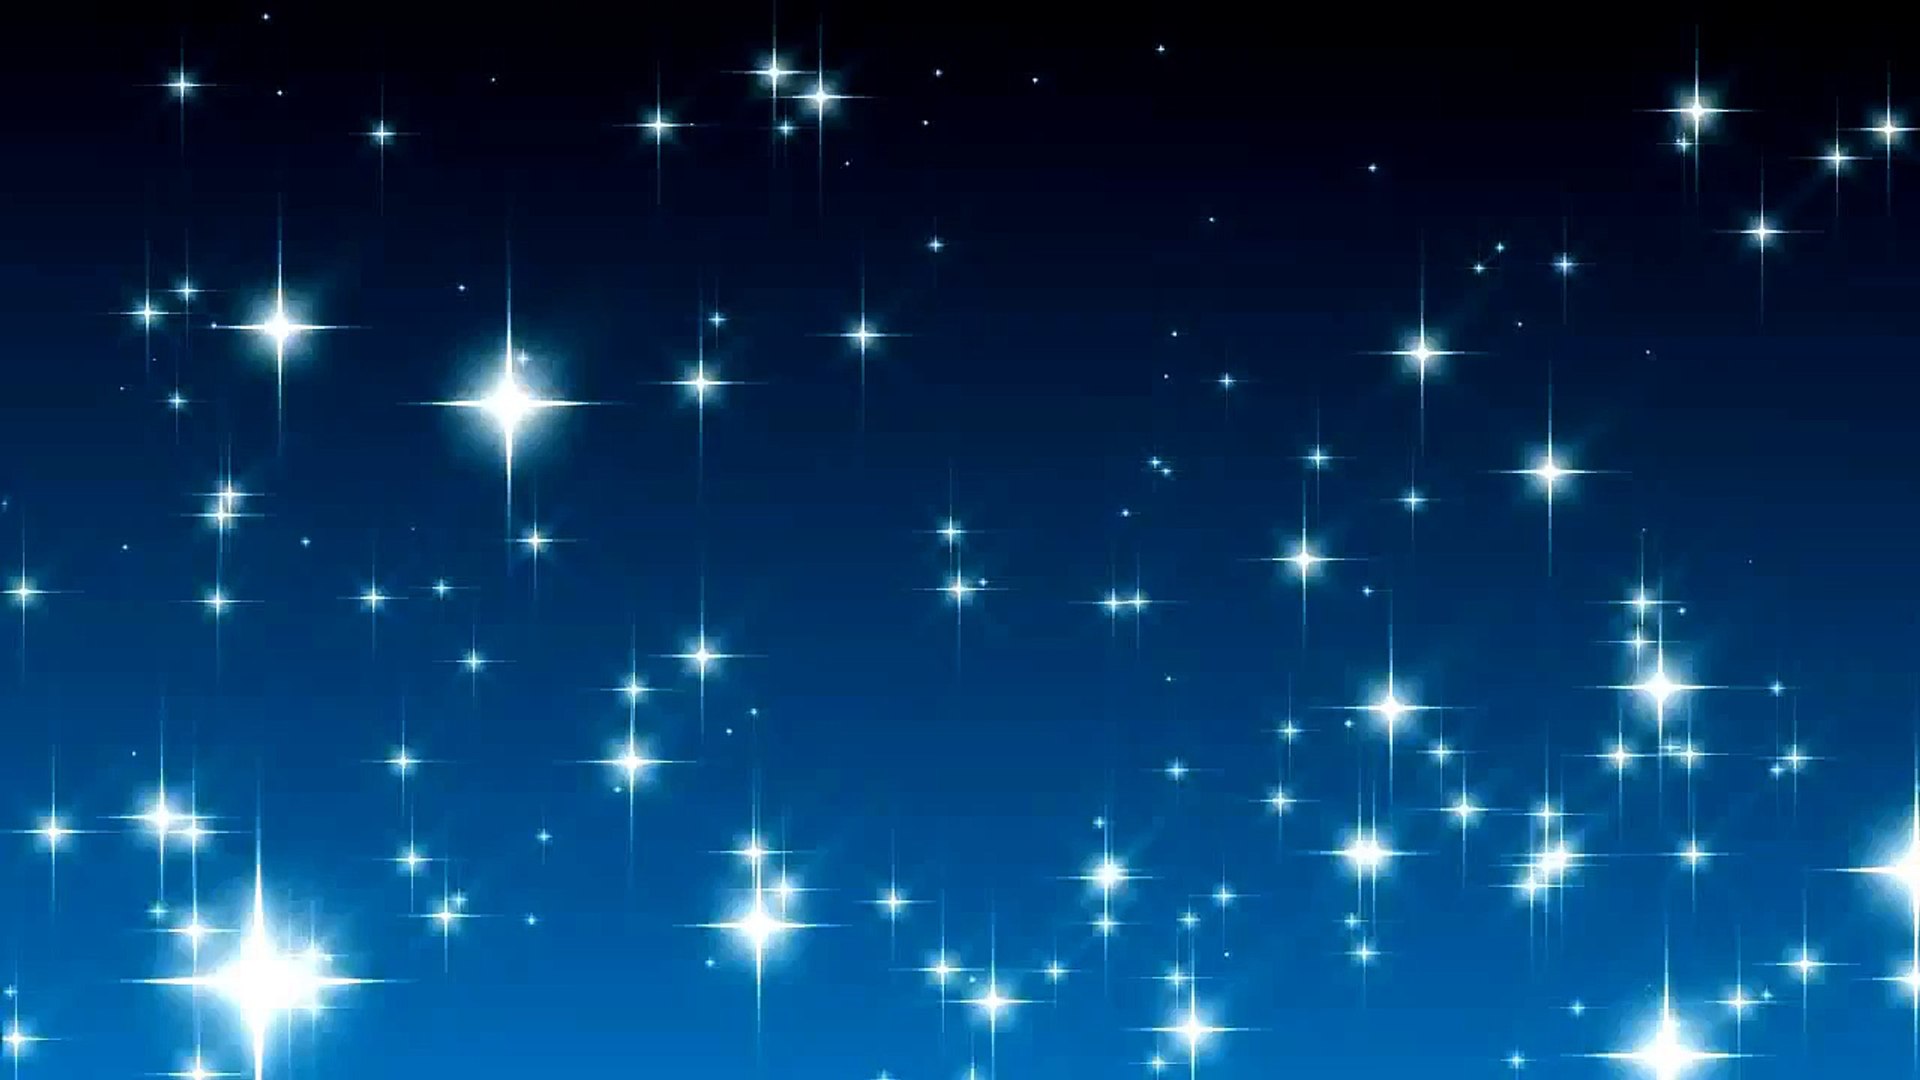 Ánh sao lấp lánh trên bầu trời đêm là một trong những cảnh tượng kỳ diệu và lãng mạn nhất. Cùng ngắm nhìn hình ảnh này để được lắng đọng trong hơi thở của vũ trụ, và ngẫm nghĩ về sự vô hạn của tinh tú trên trời cao.